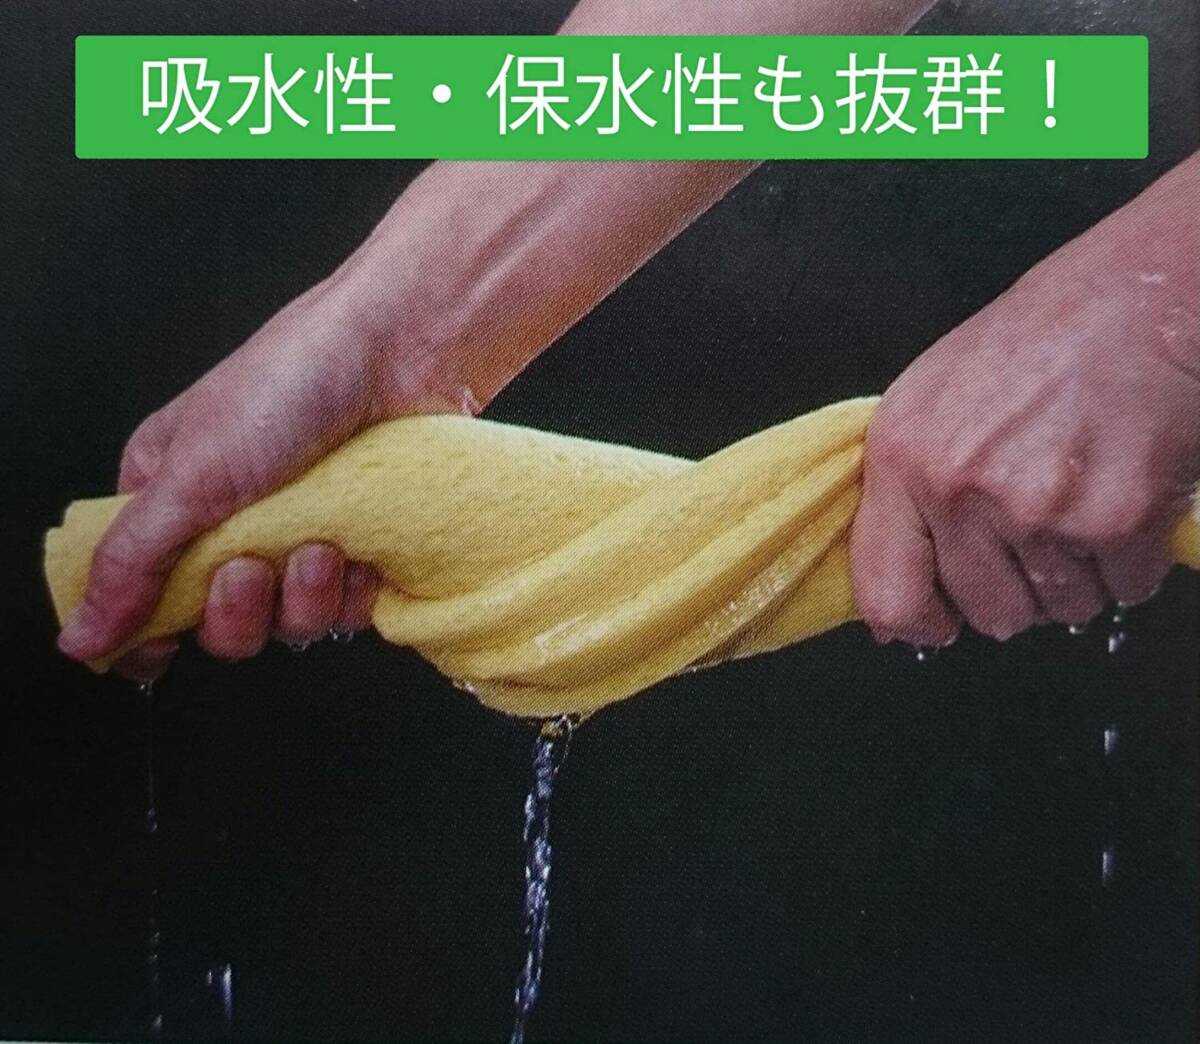 セルローススポンジ クロス 日本製 吸水 速乾 水切りマット 大判タイプ 45×30cm グリーン 3枚セット_画像3